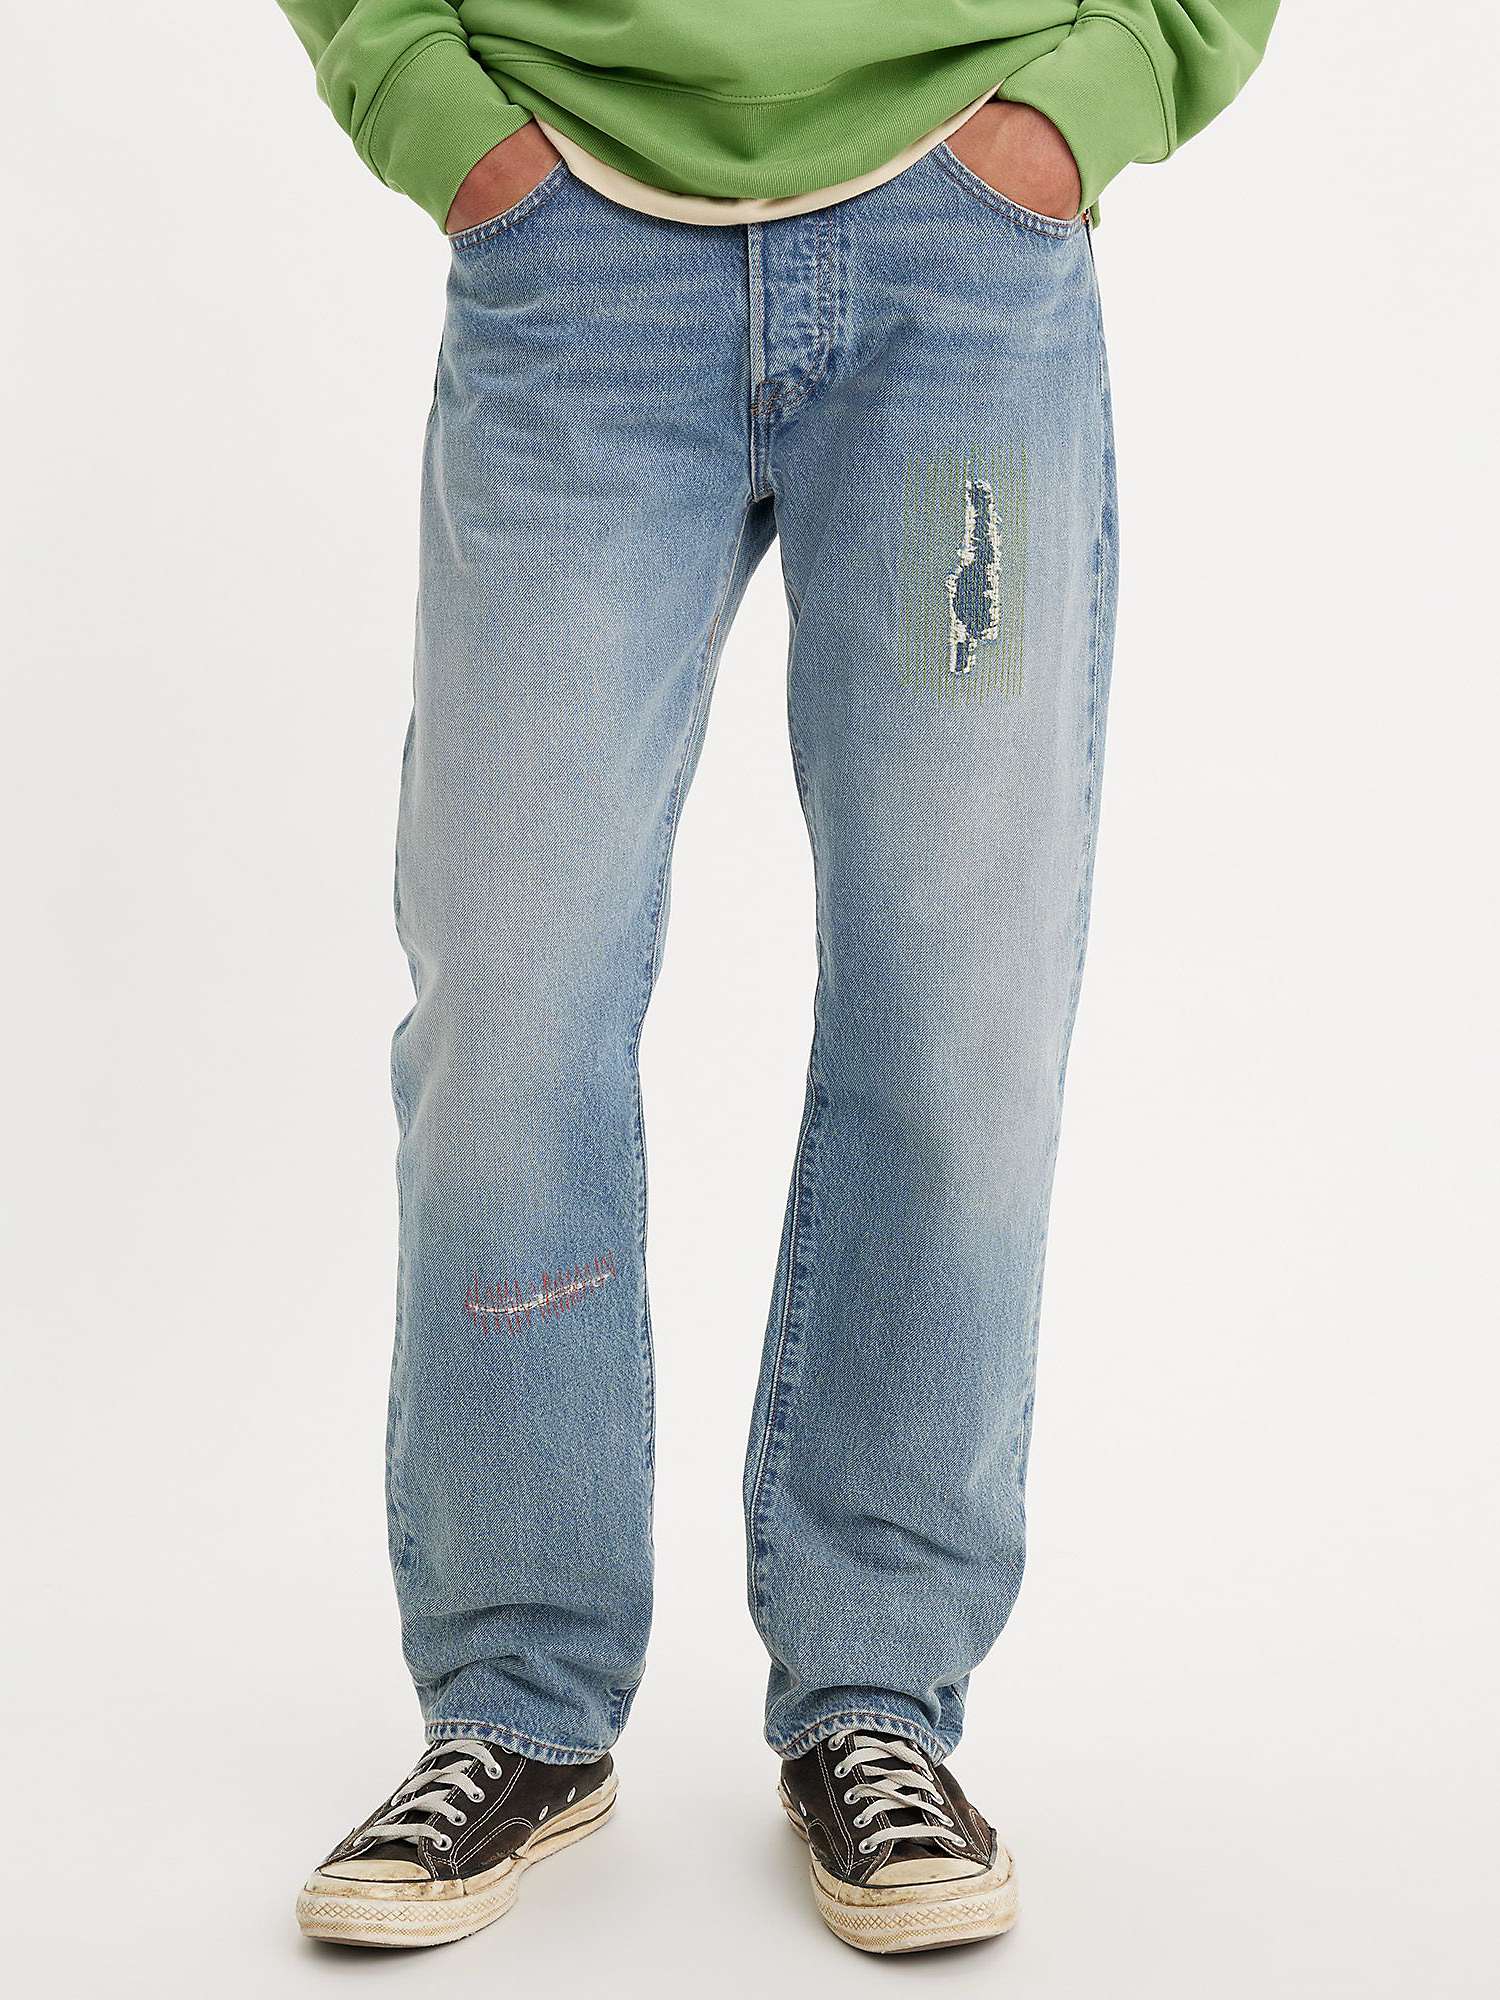 Buy Levi's Skateboarding 501® Originals Jeans, Banshee Scream Online at johnlewis.com